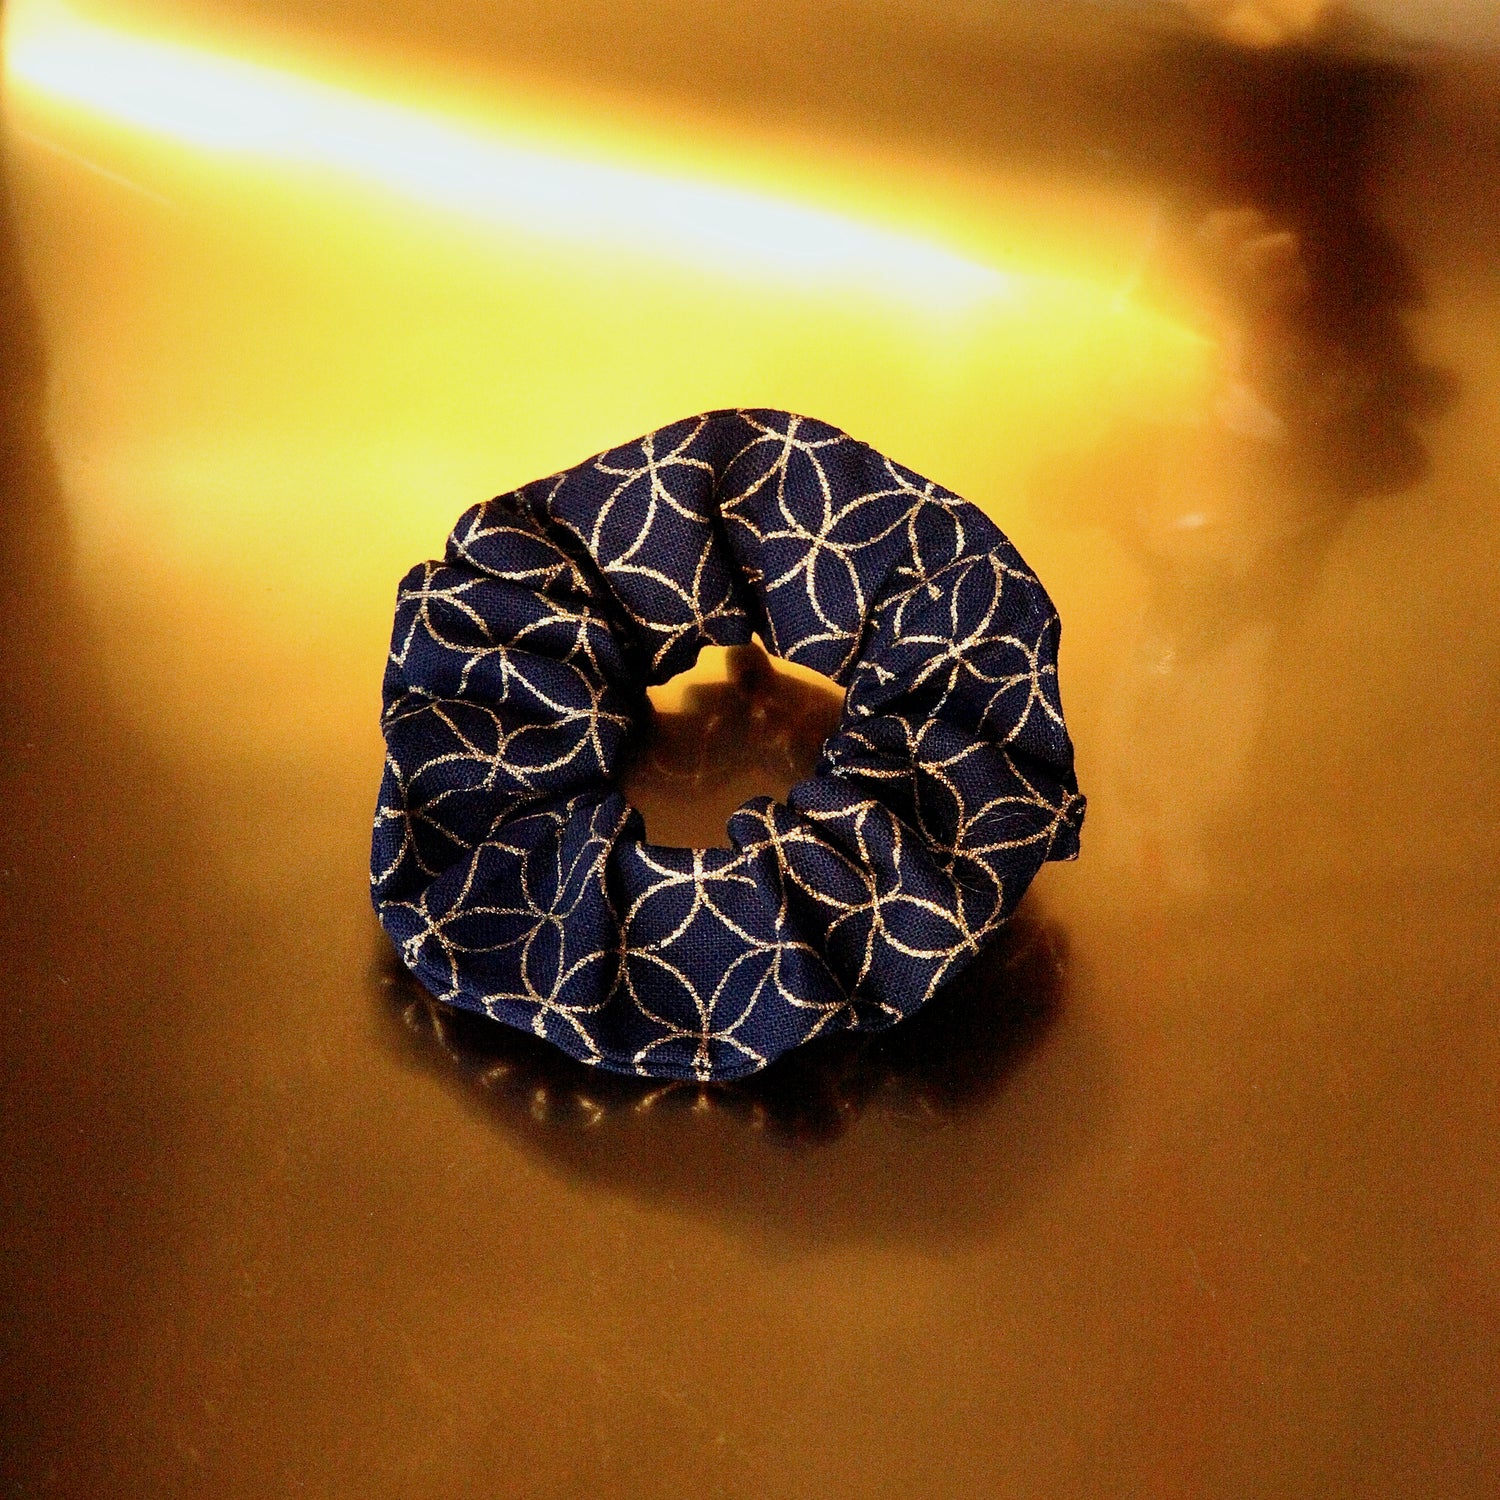 Nagoya Scrunchie in Mini size